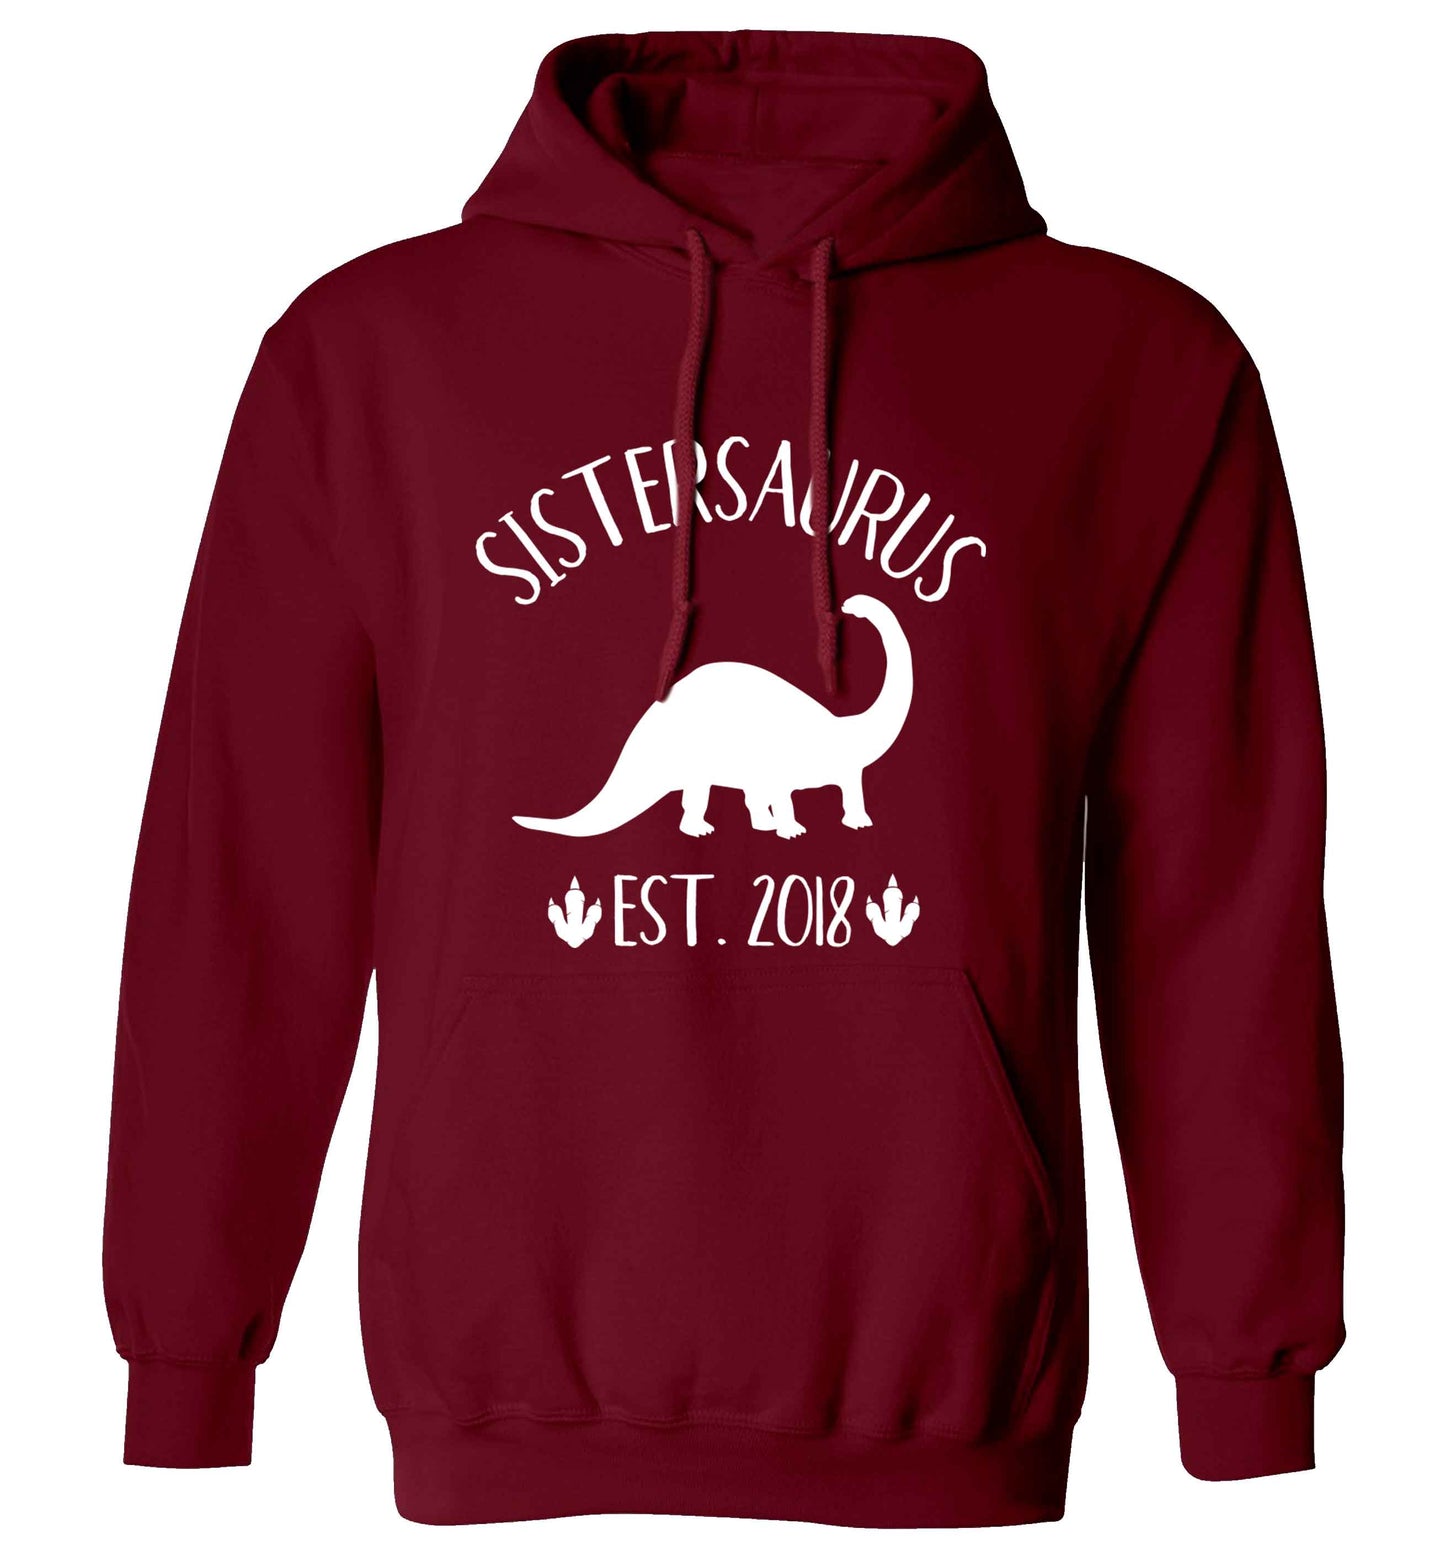 Personalised sistersaurus since (custom date) adults unisex maroon hoodie 2XL